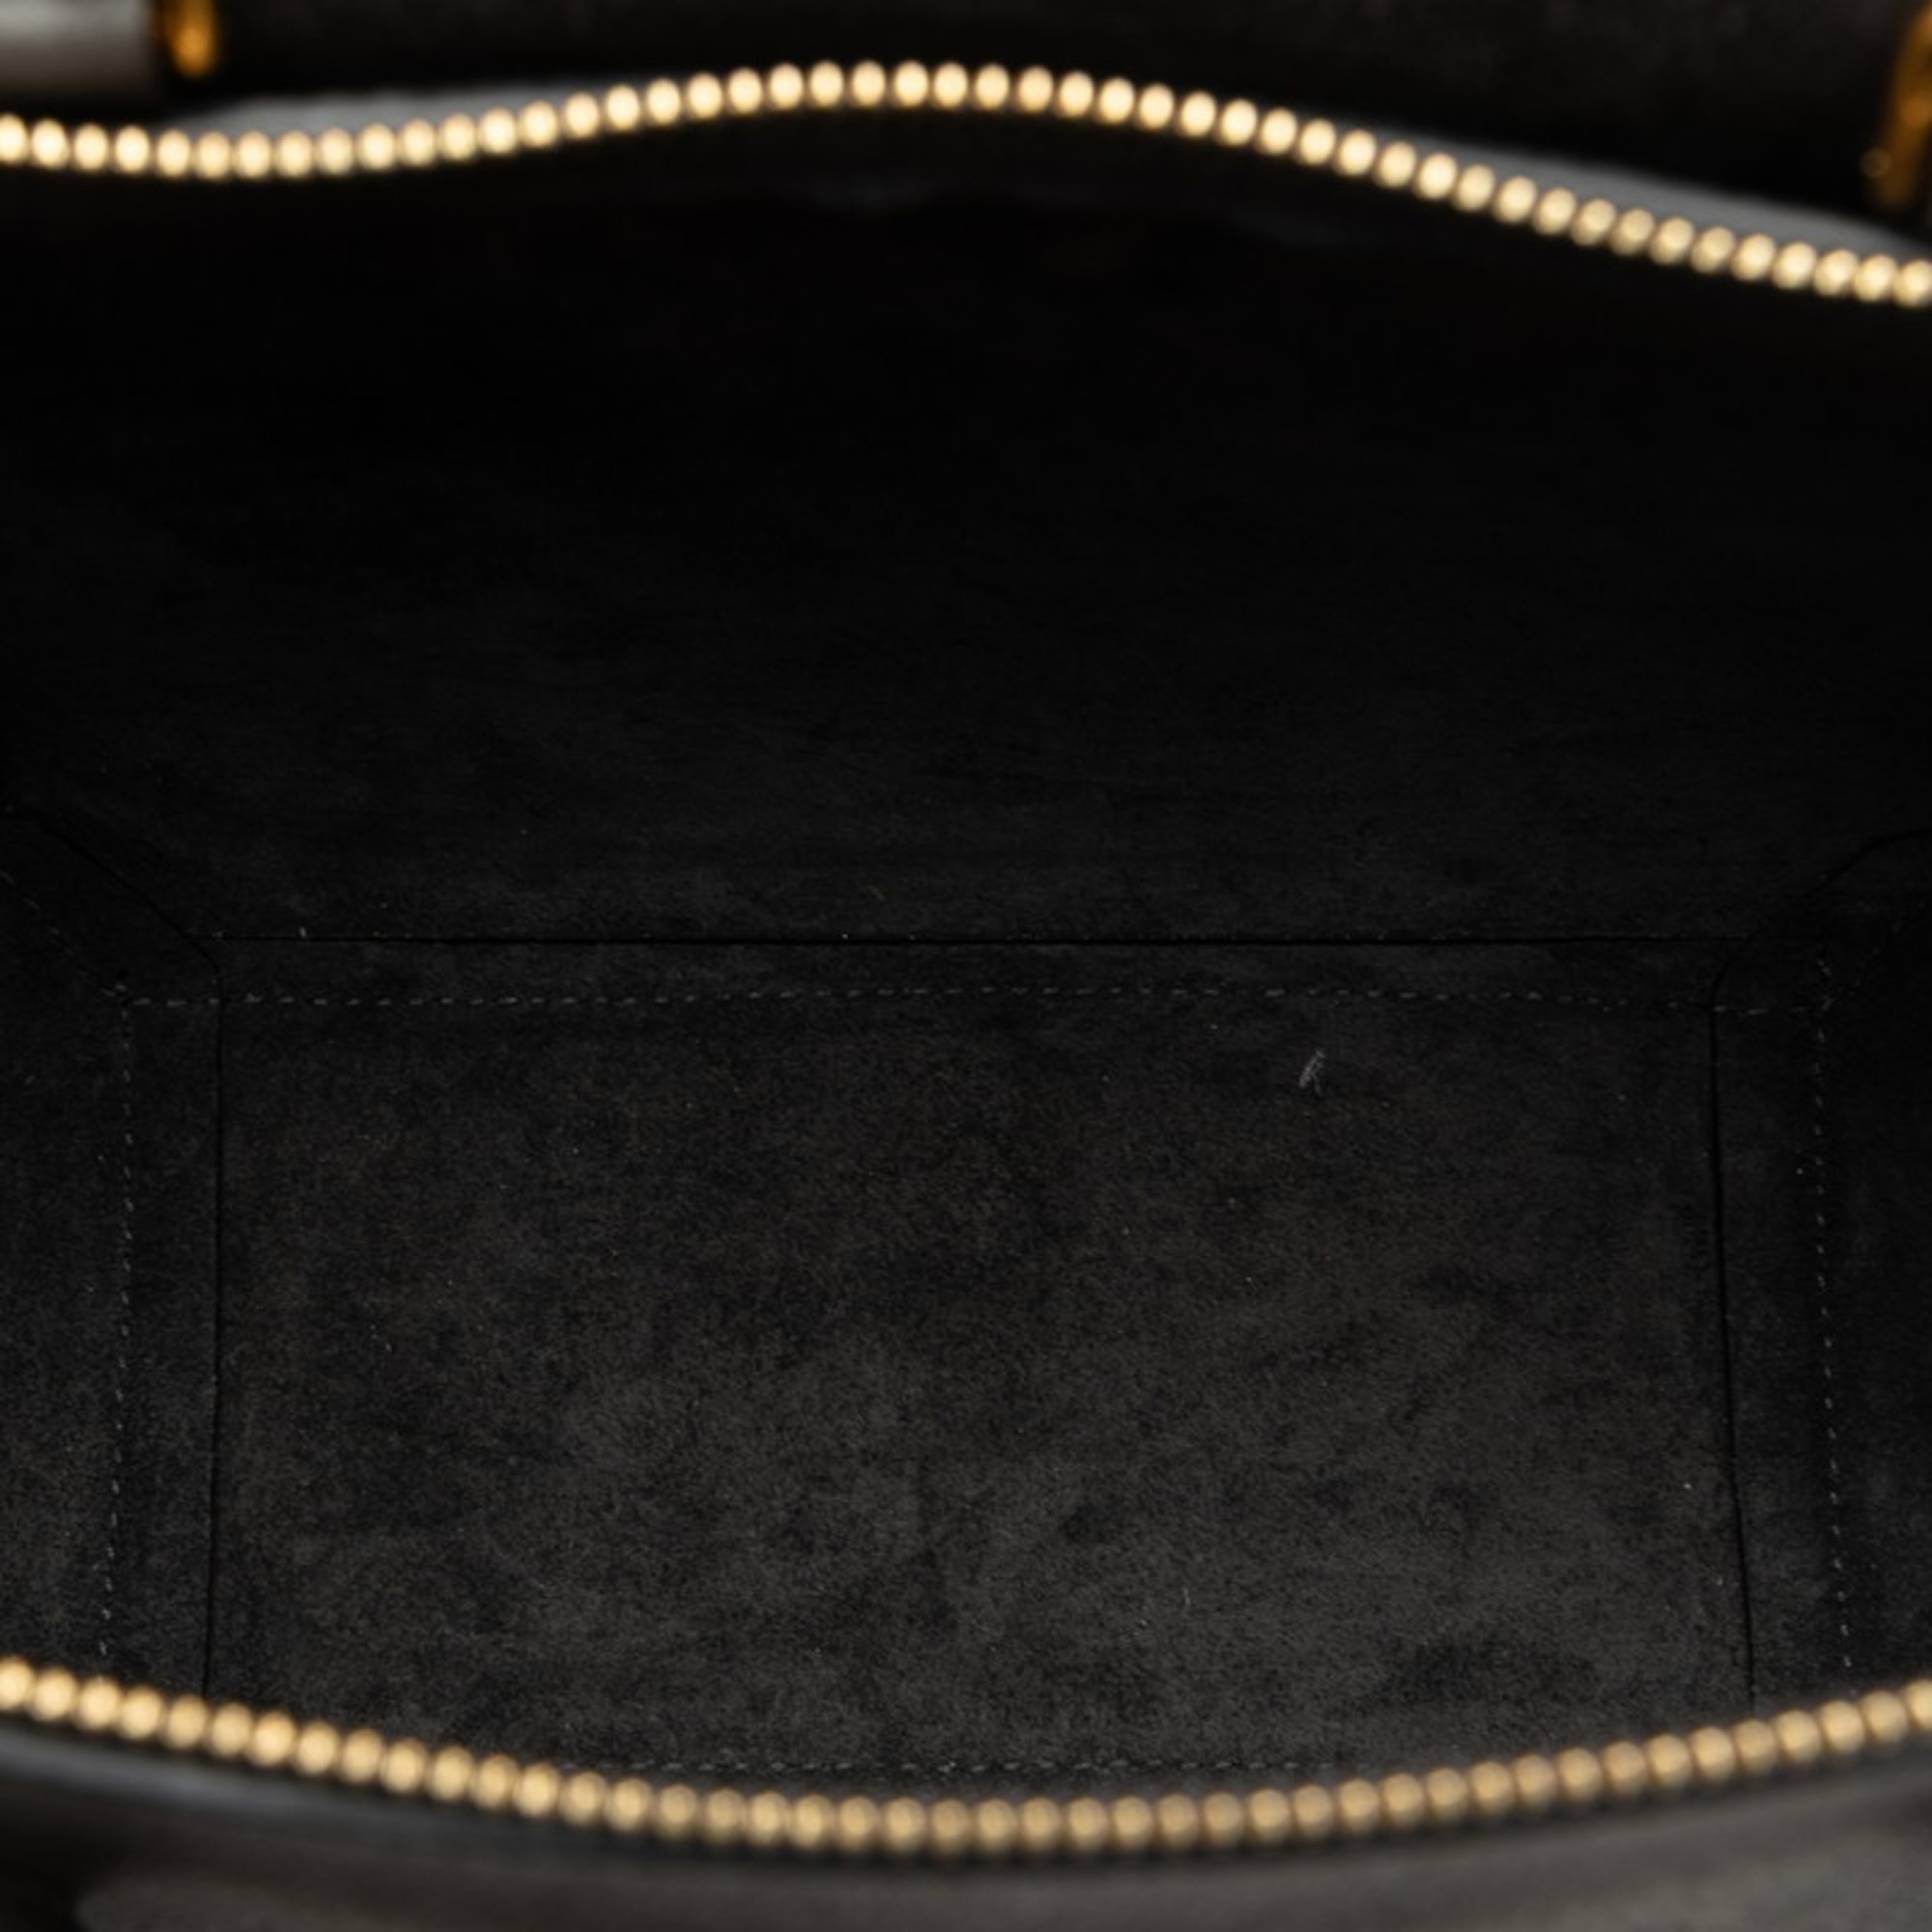 Celine Nano Belt Bag Handbag Shoulder S-AI-1282 Grey Leather Women's CELINE